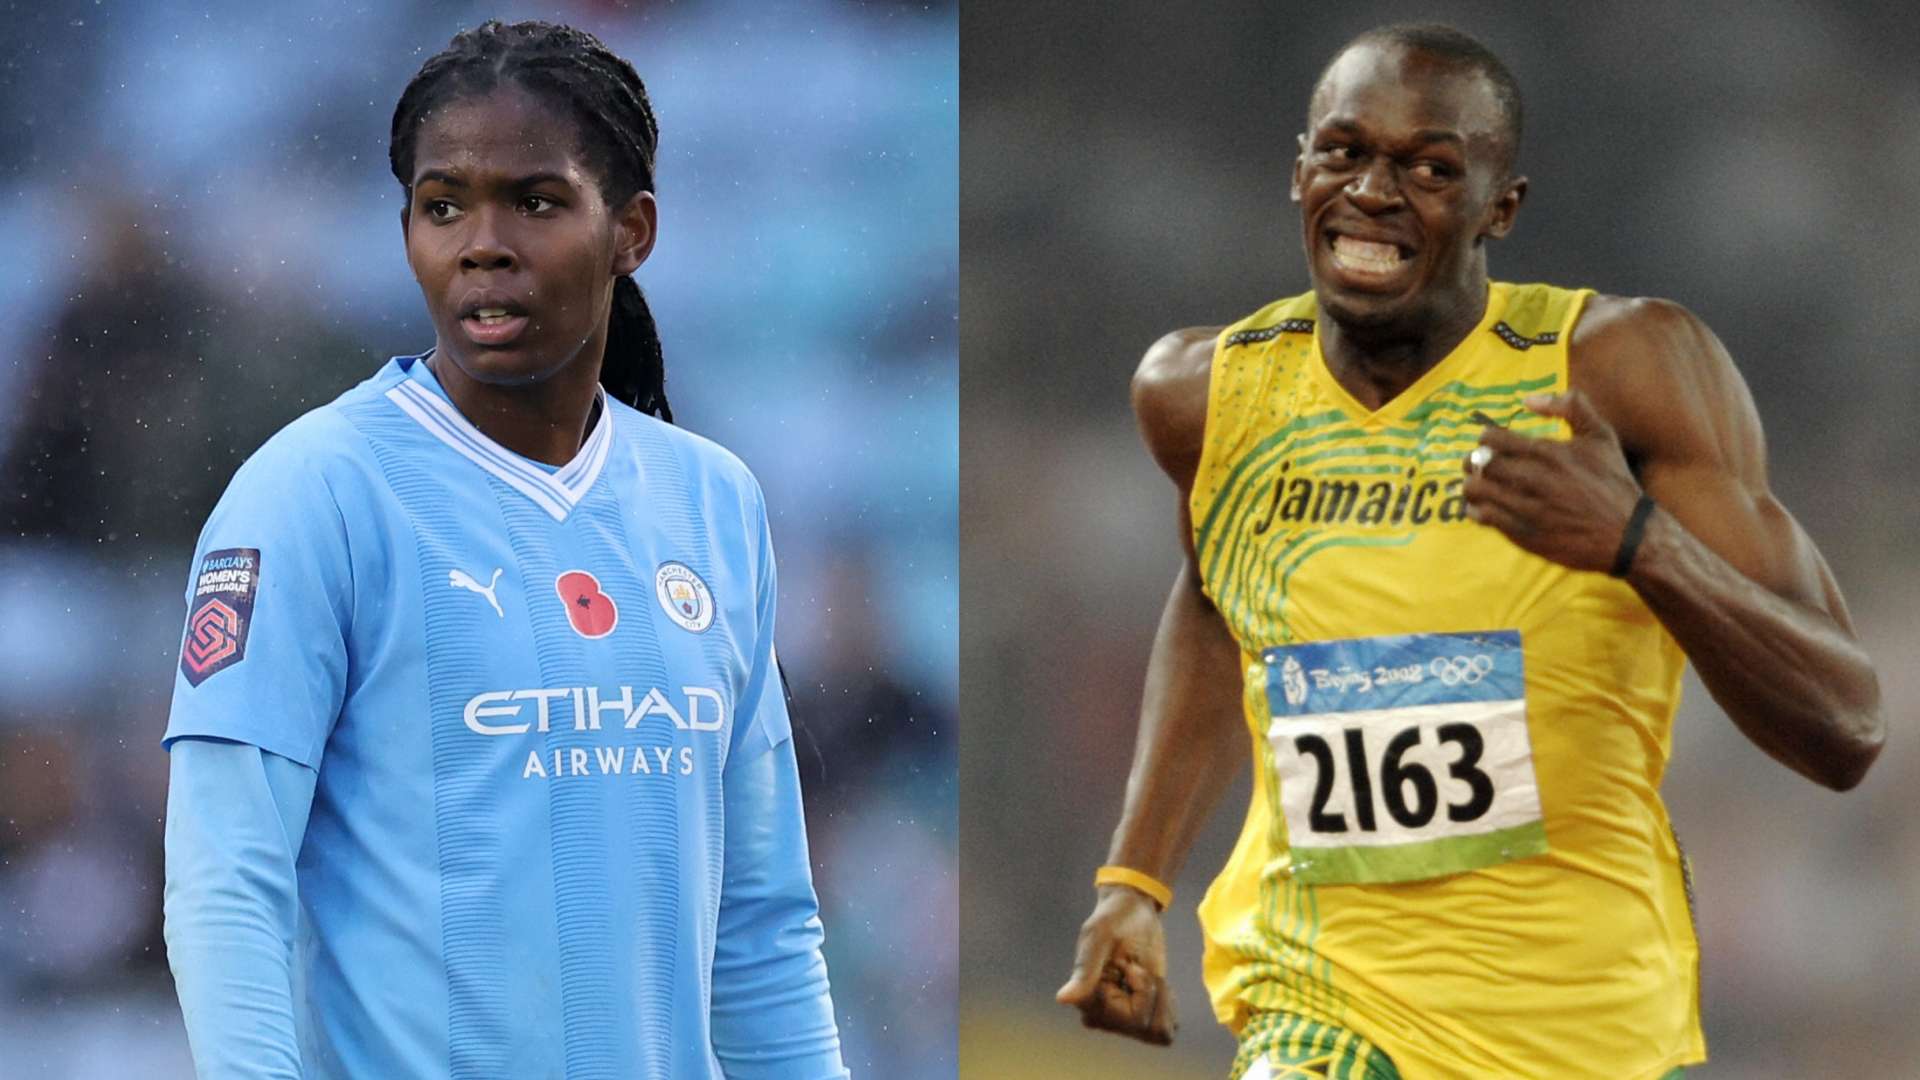 Khadija 'Bunny' Shaw of Man City and Usain Bolt